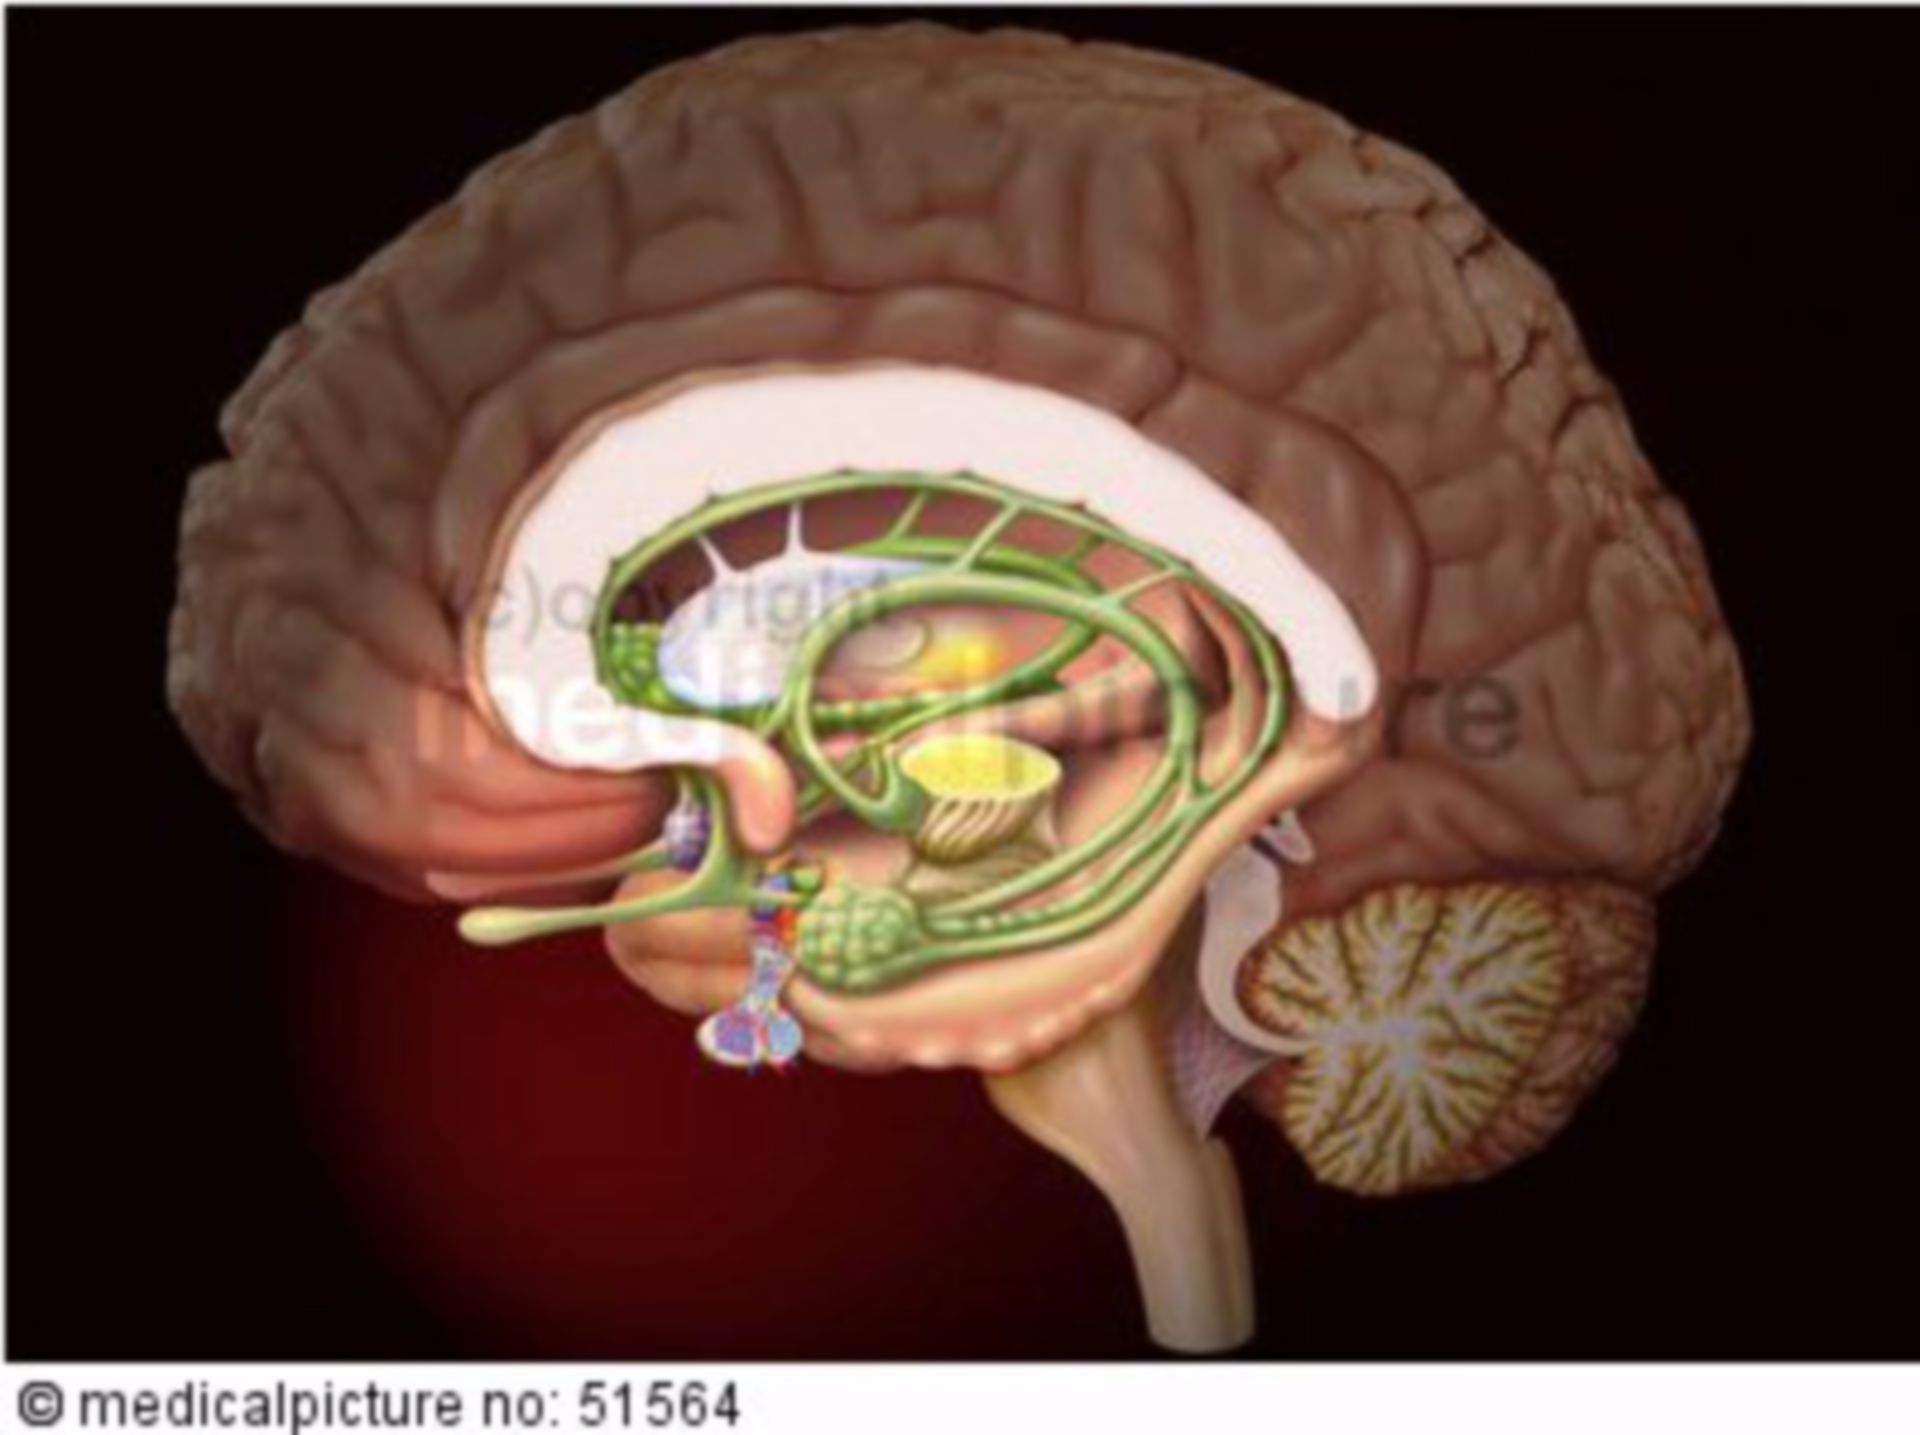 Right hemisphere of the brain